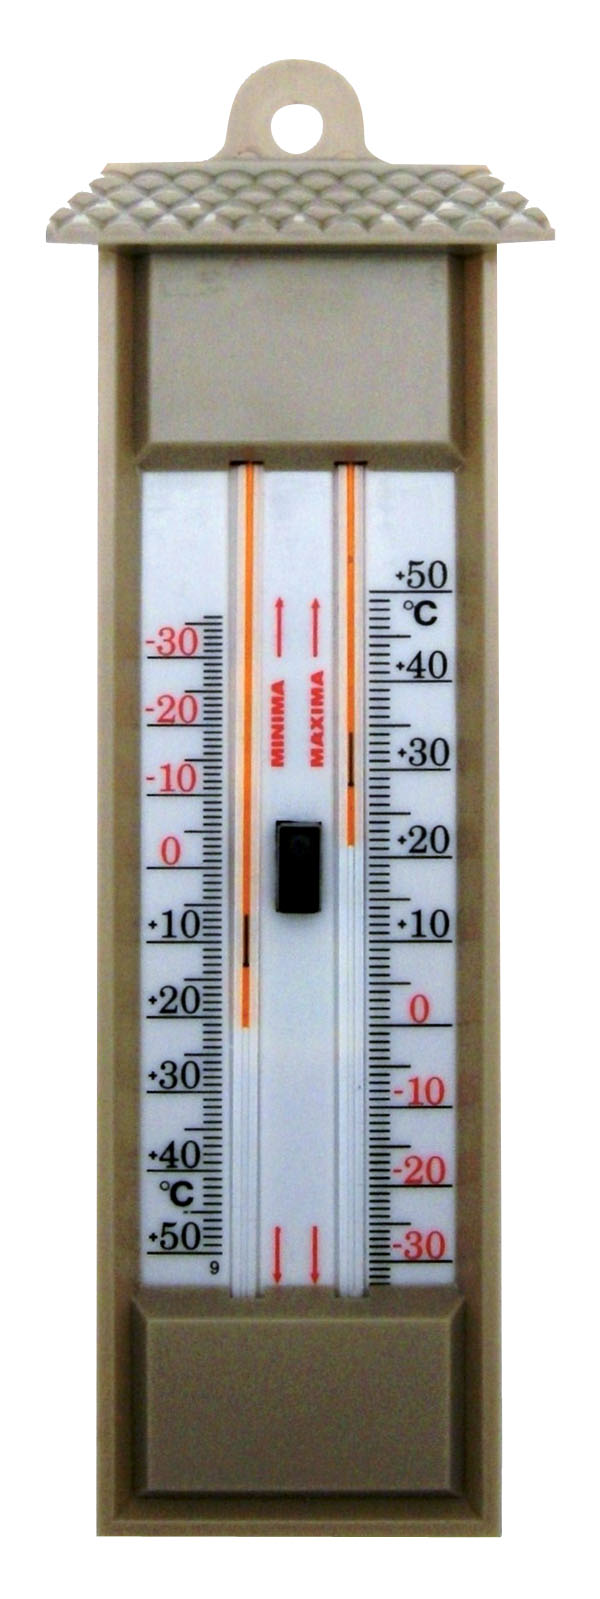 Thermomètre maxi - mini